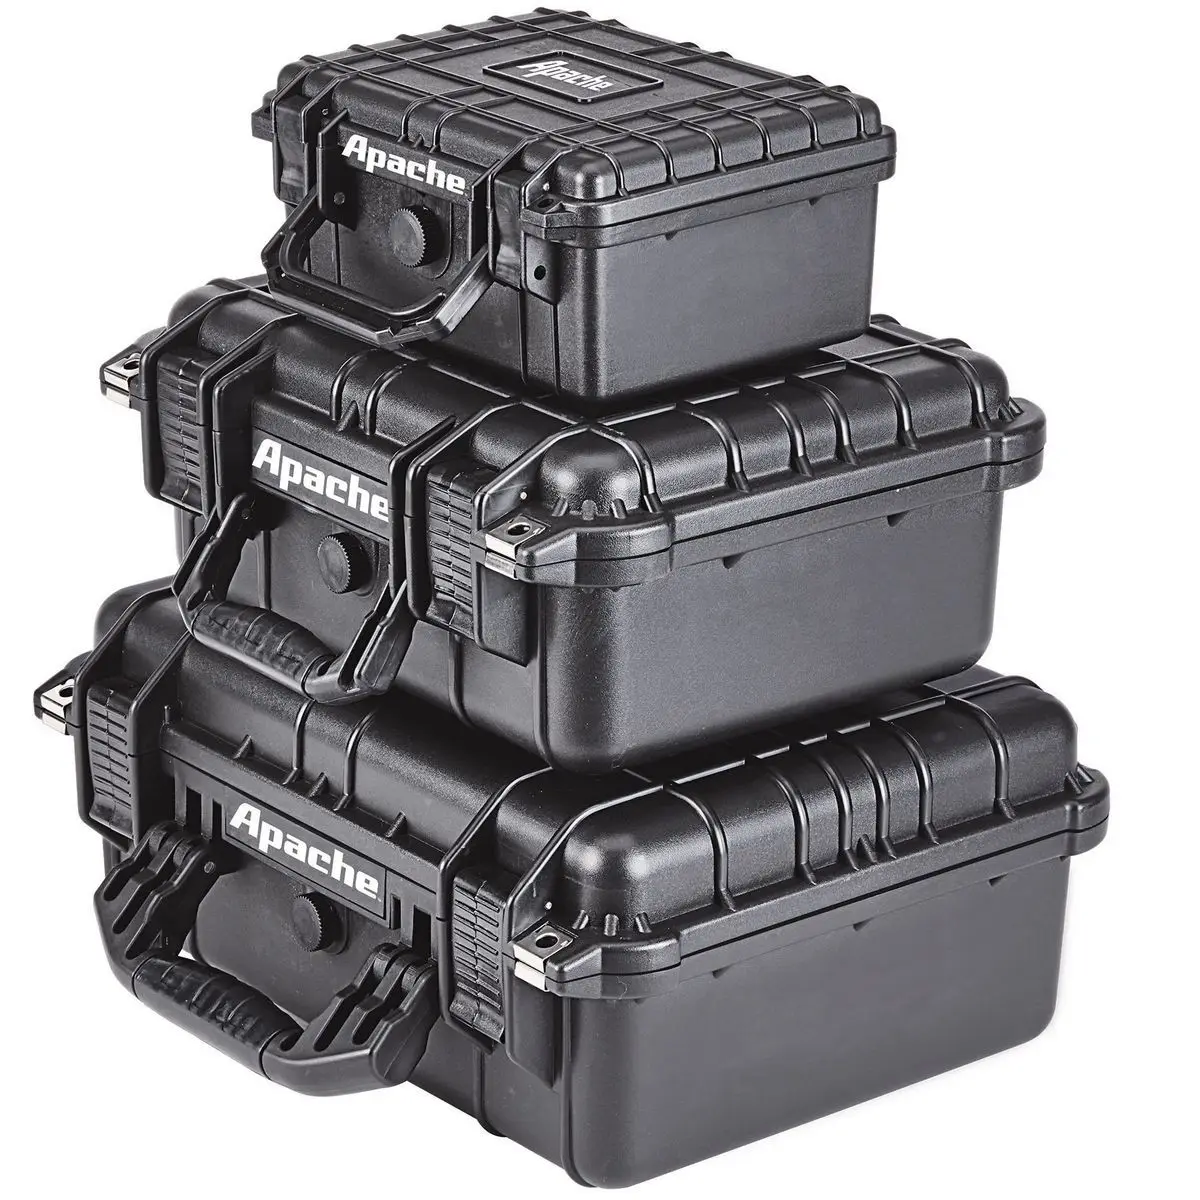 Caja de Herramientas para cámara, caja de herramientas impermeable de estilo pellican de 9 pulgadas